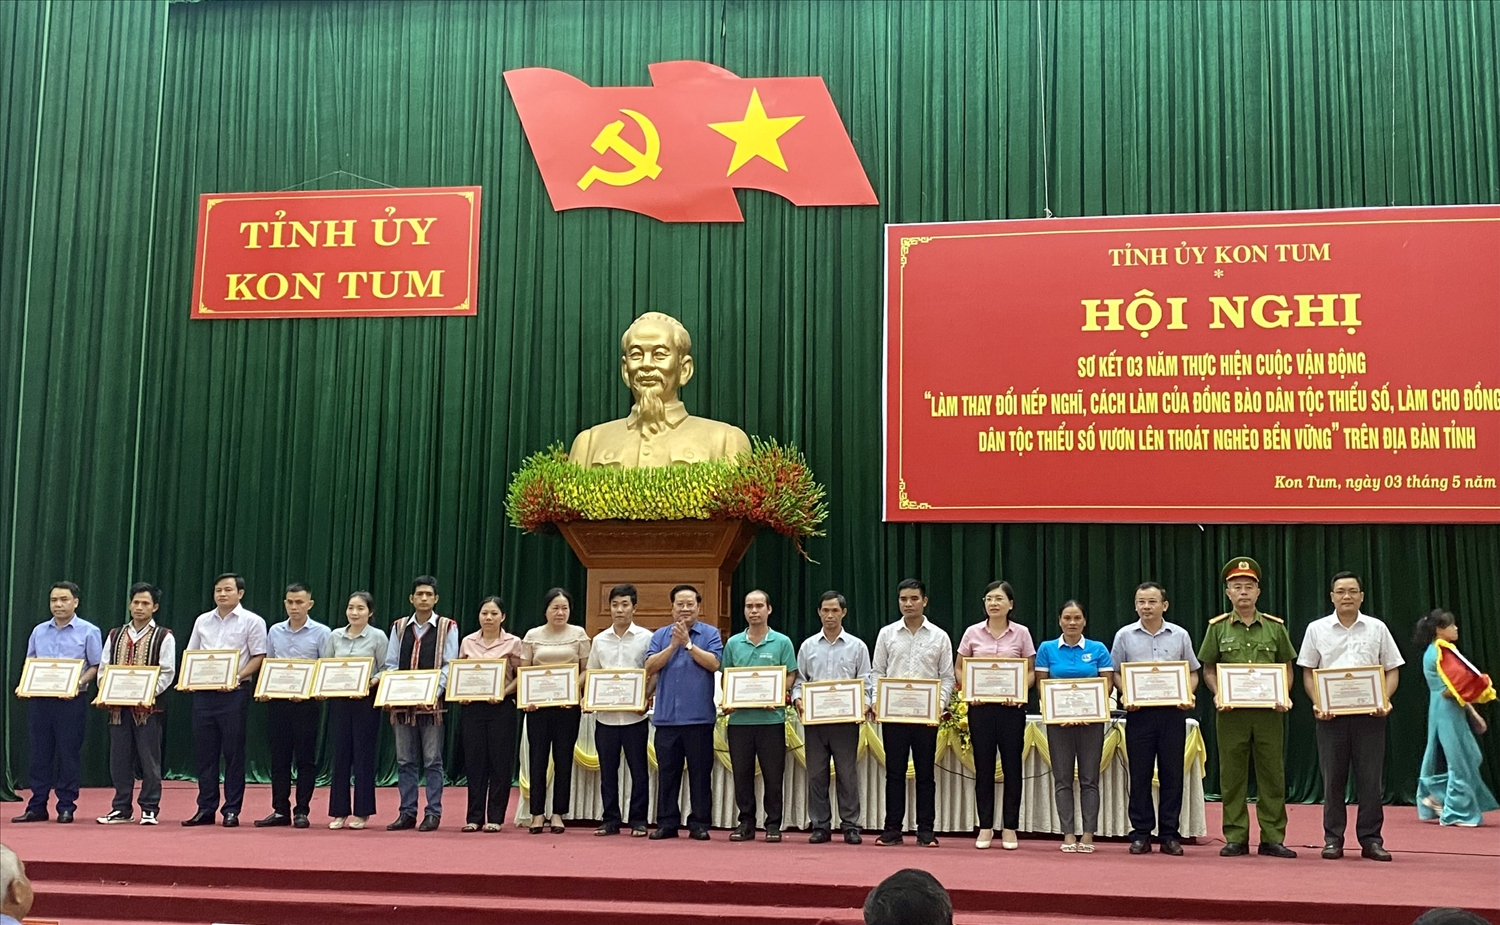 Chủ tịch UBND tỉnh Kon Tum Lê Ngọc Tuấn tặng Bằng khen cho các tập thể có thành tích xuất sắc trong tổ chức thực hiện Cuộc vận động